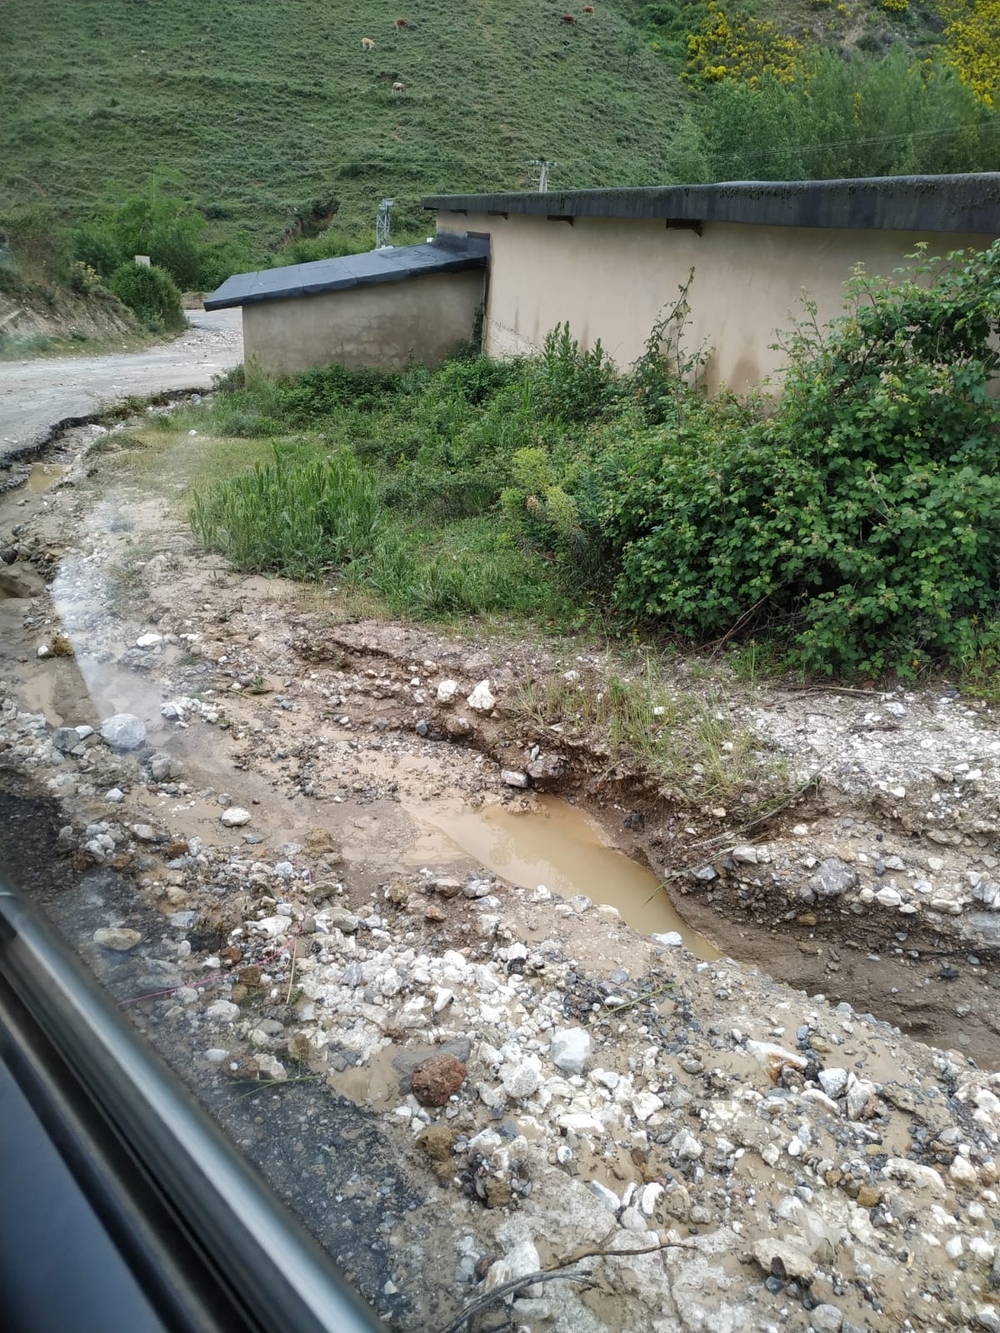 La caída de piedras y barro atrapa a ocho coches en Viguera